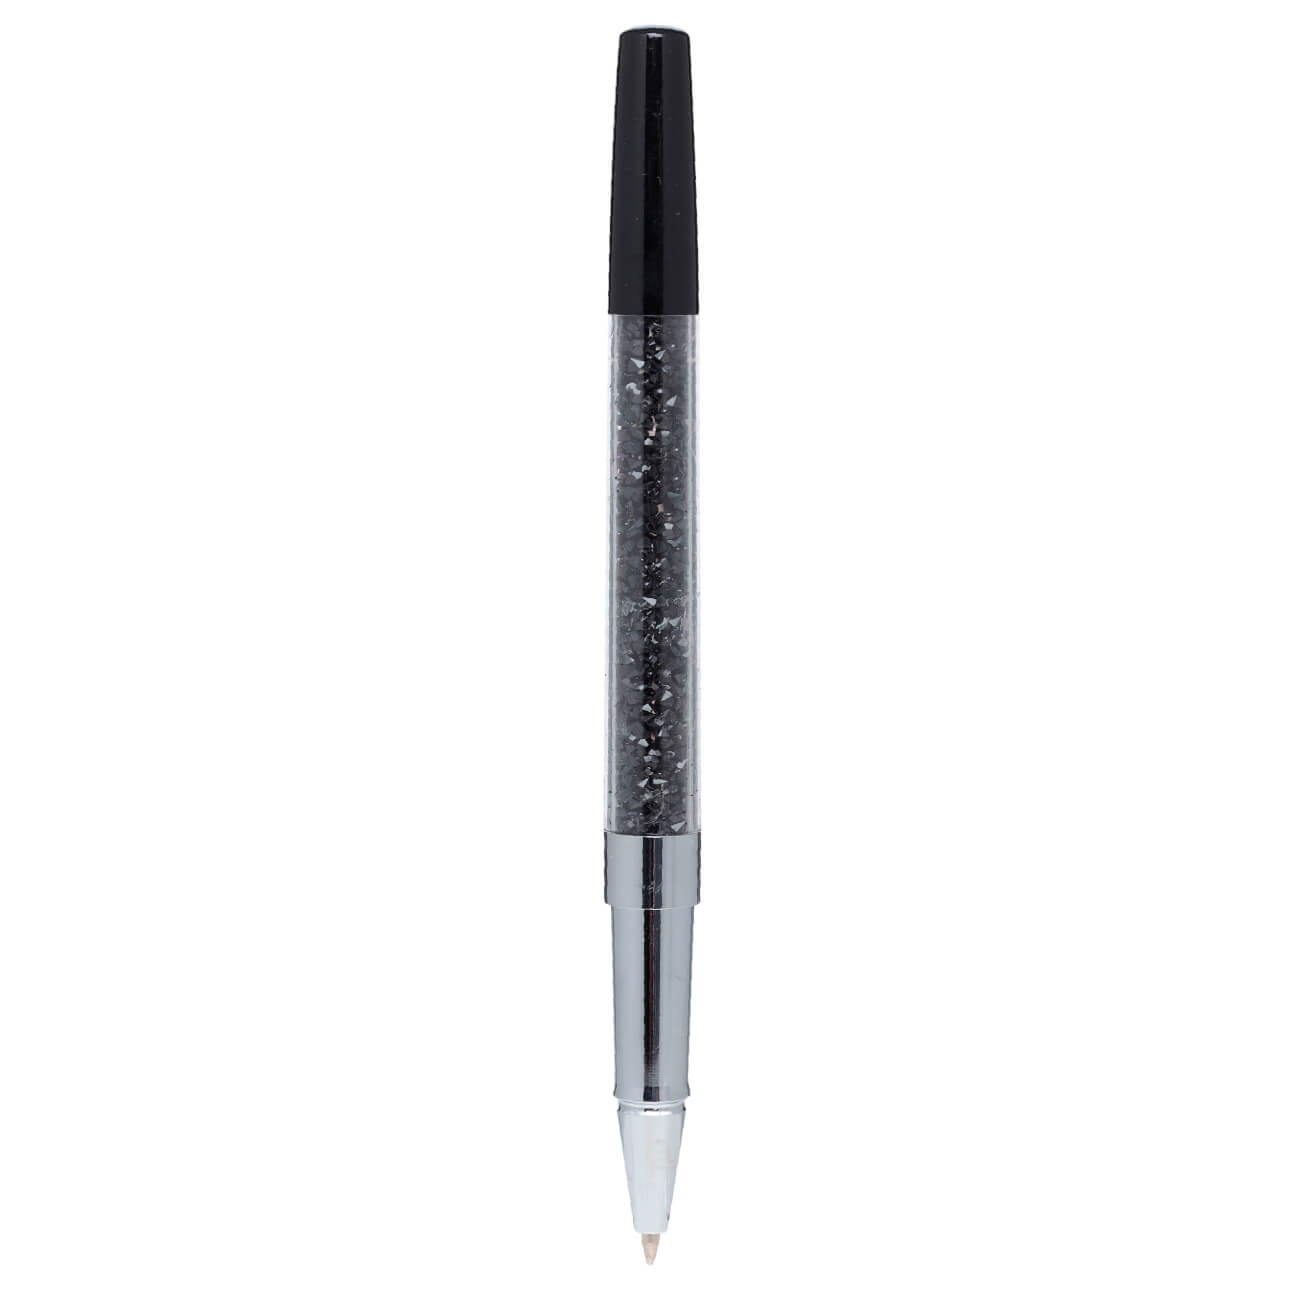 Ручка гелевая, 15 см, сталь, черная, Кристаллы, Draw cristal седельная покрышка для велосипеда author гелевая asd gel tech черная 8 31300005